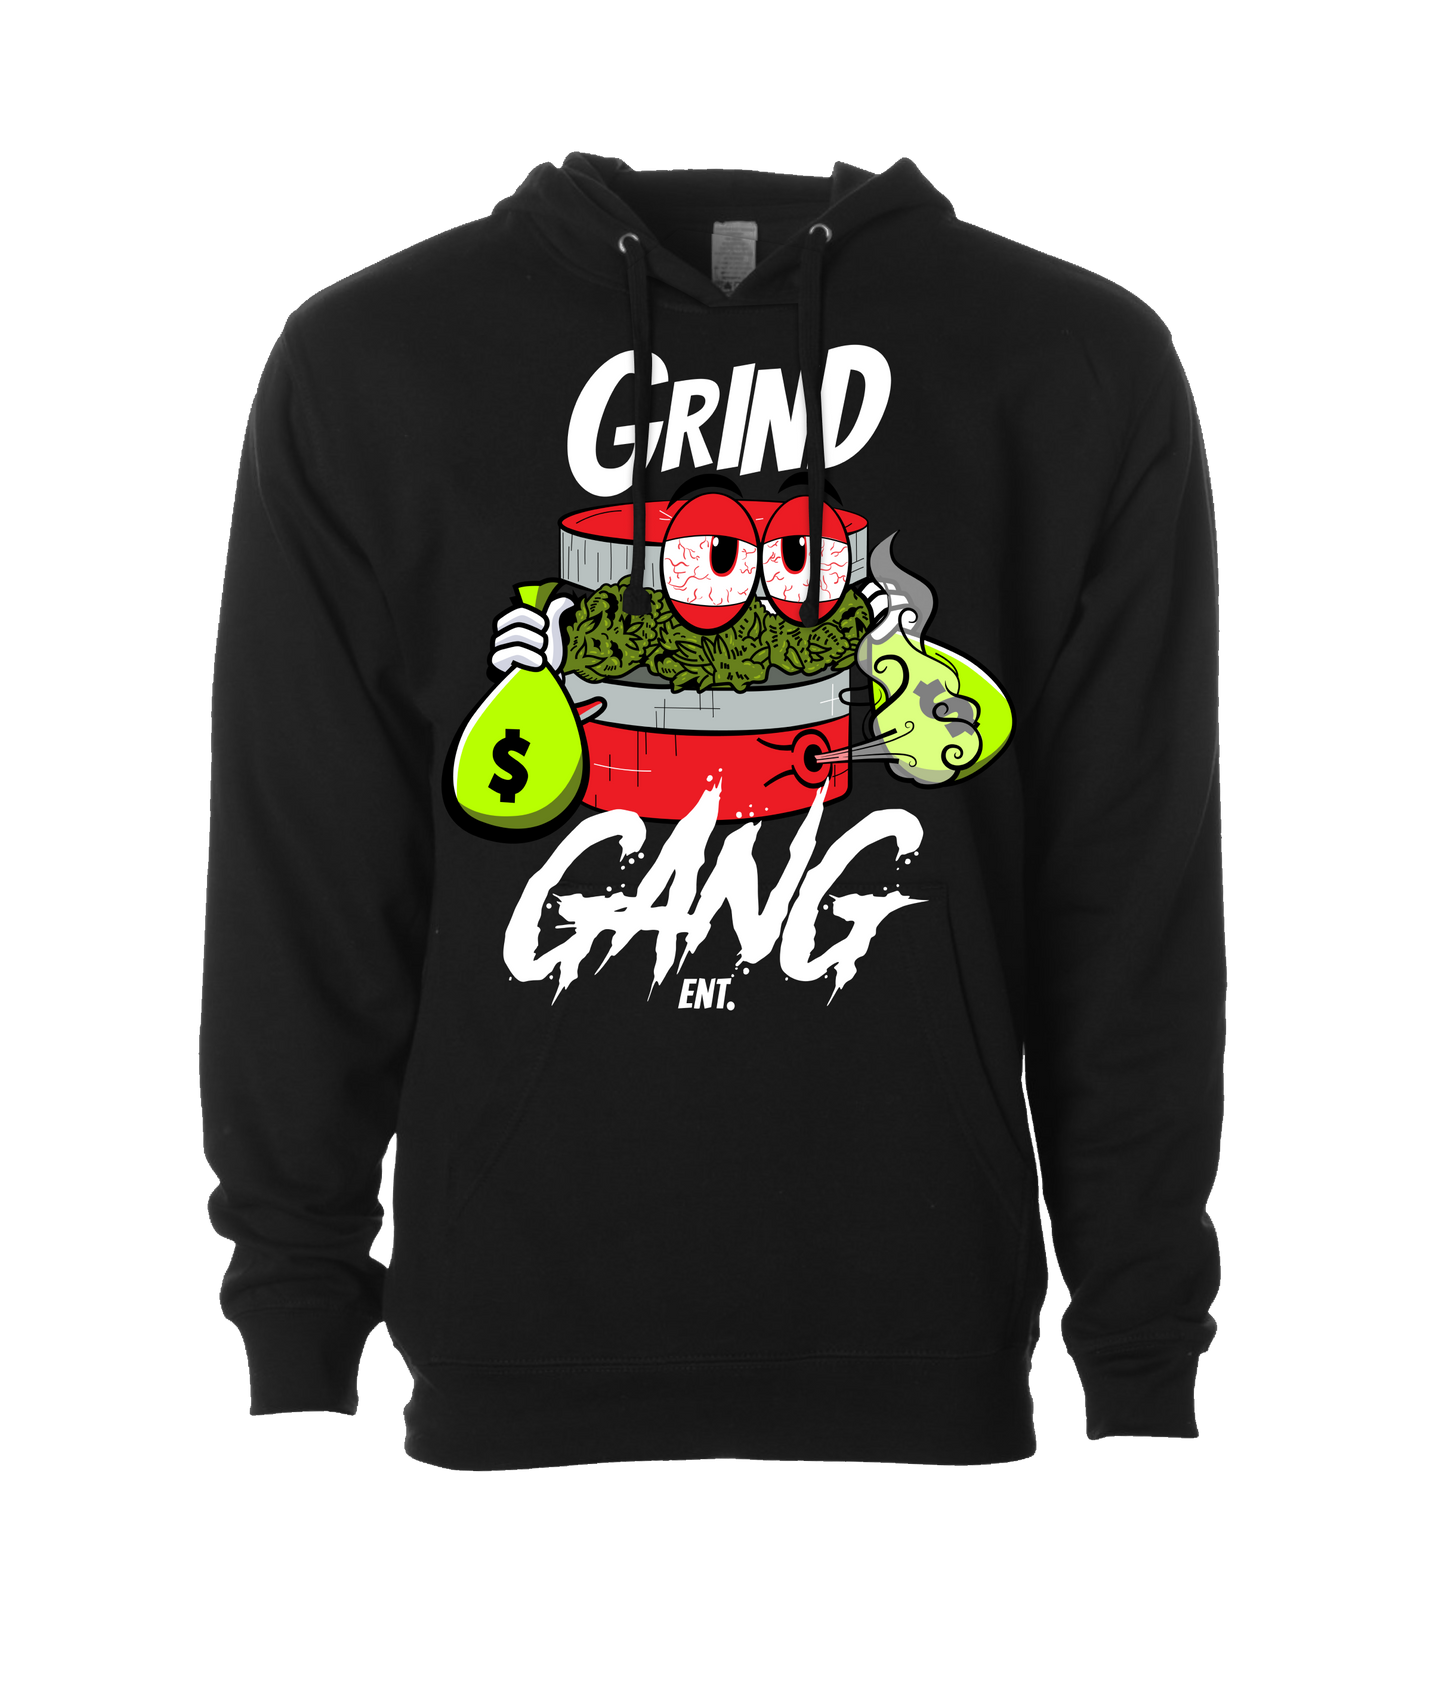 GRIND GANG ENT. LLC - RED GRINDER - Black Long Sleeve T